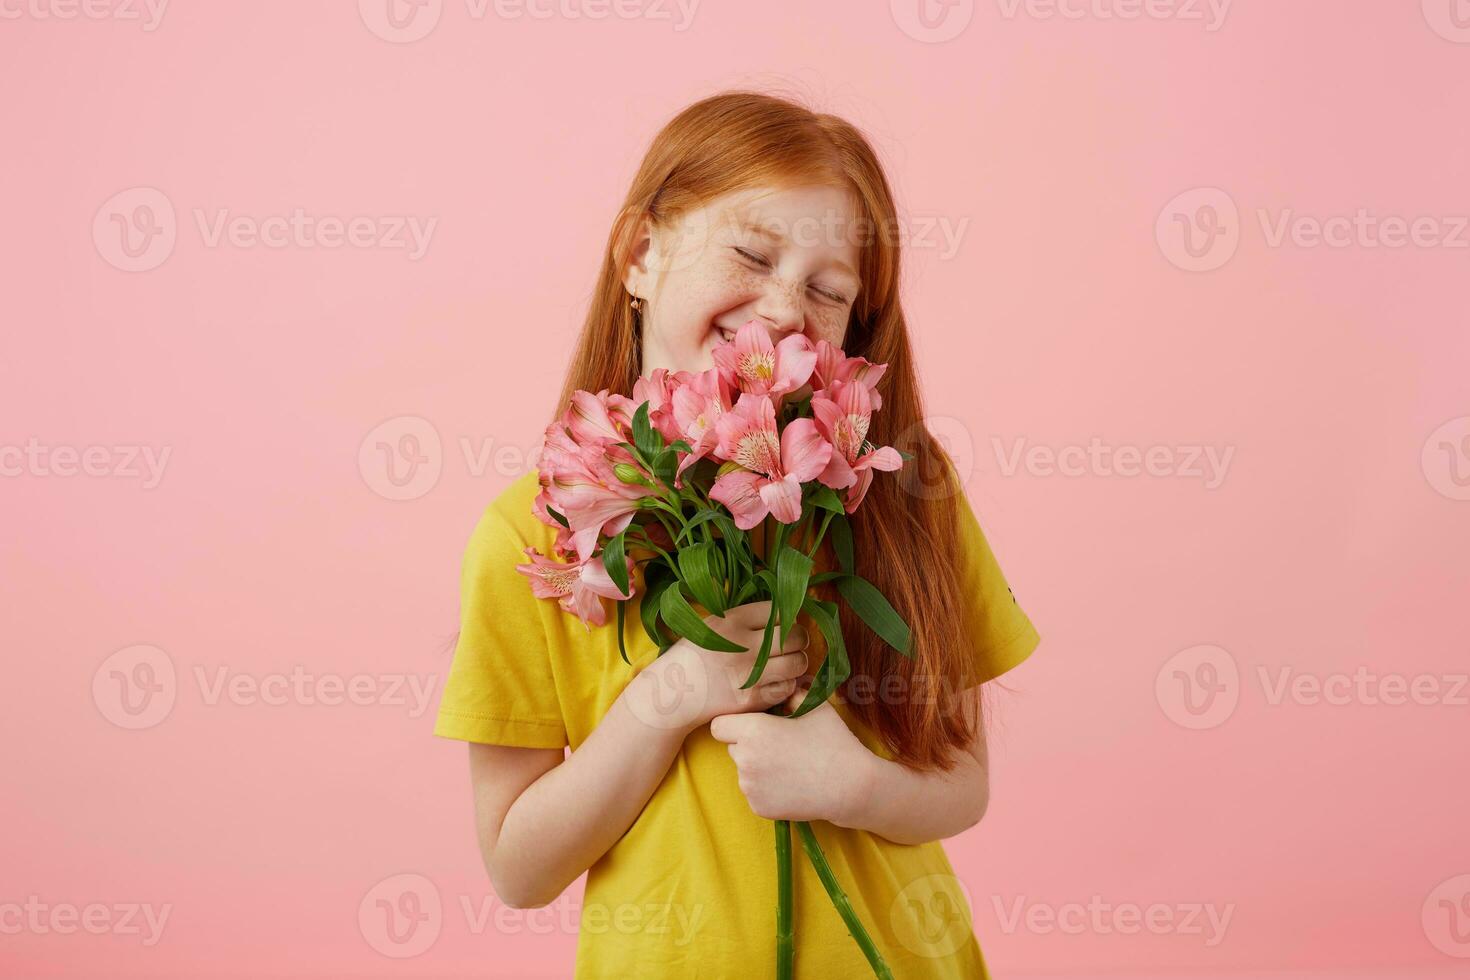 retrato chiquita sonrisas pecas Pelirrojo niña con dos cruz, mira lindo, usa en amarillo camiseta, sostiene ramo de flores y soportes terminado rosado fondo, disfrutando el oler de flores foto